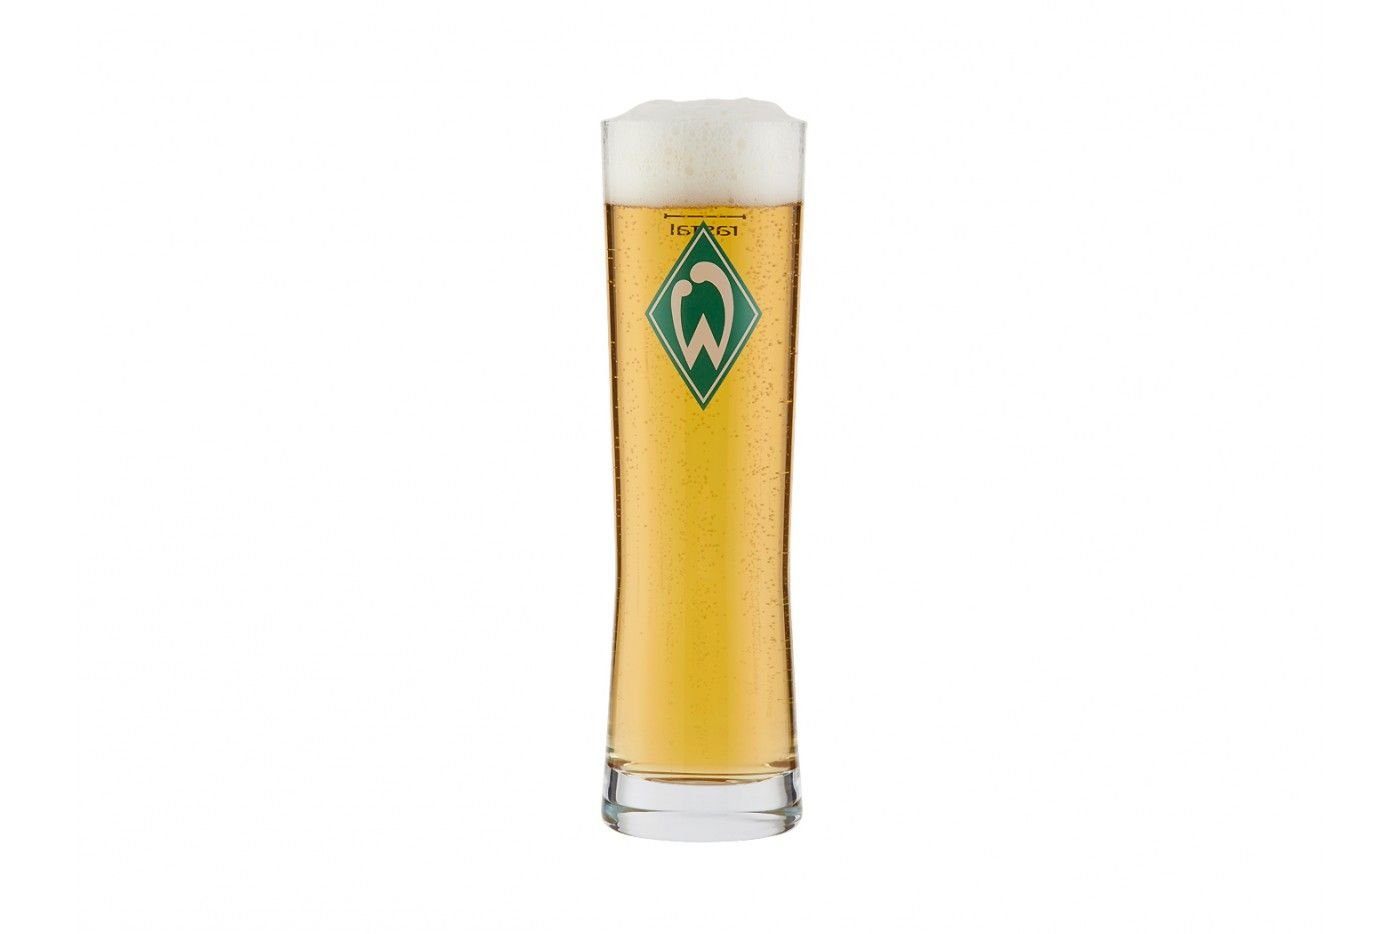 Werder Bremen Кружки